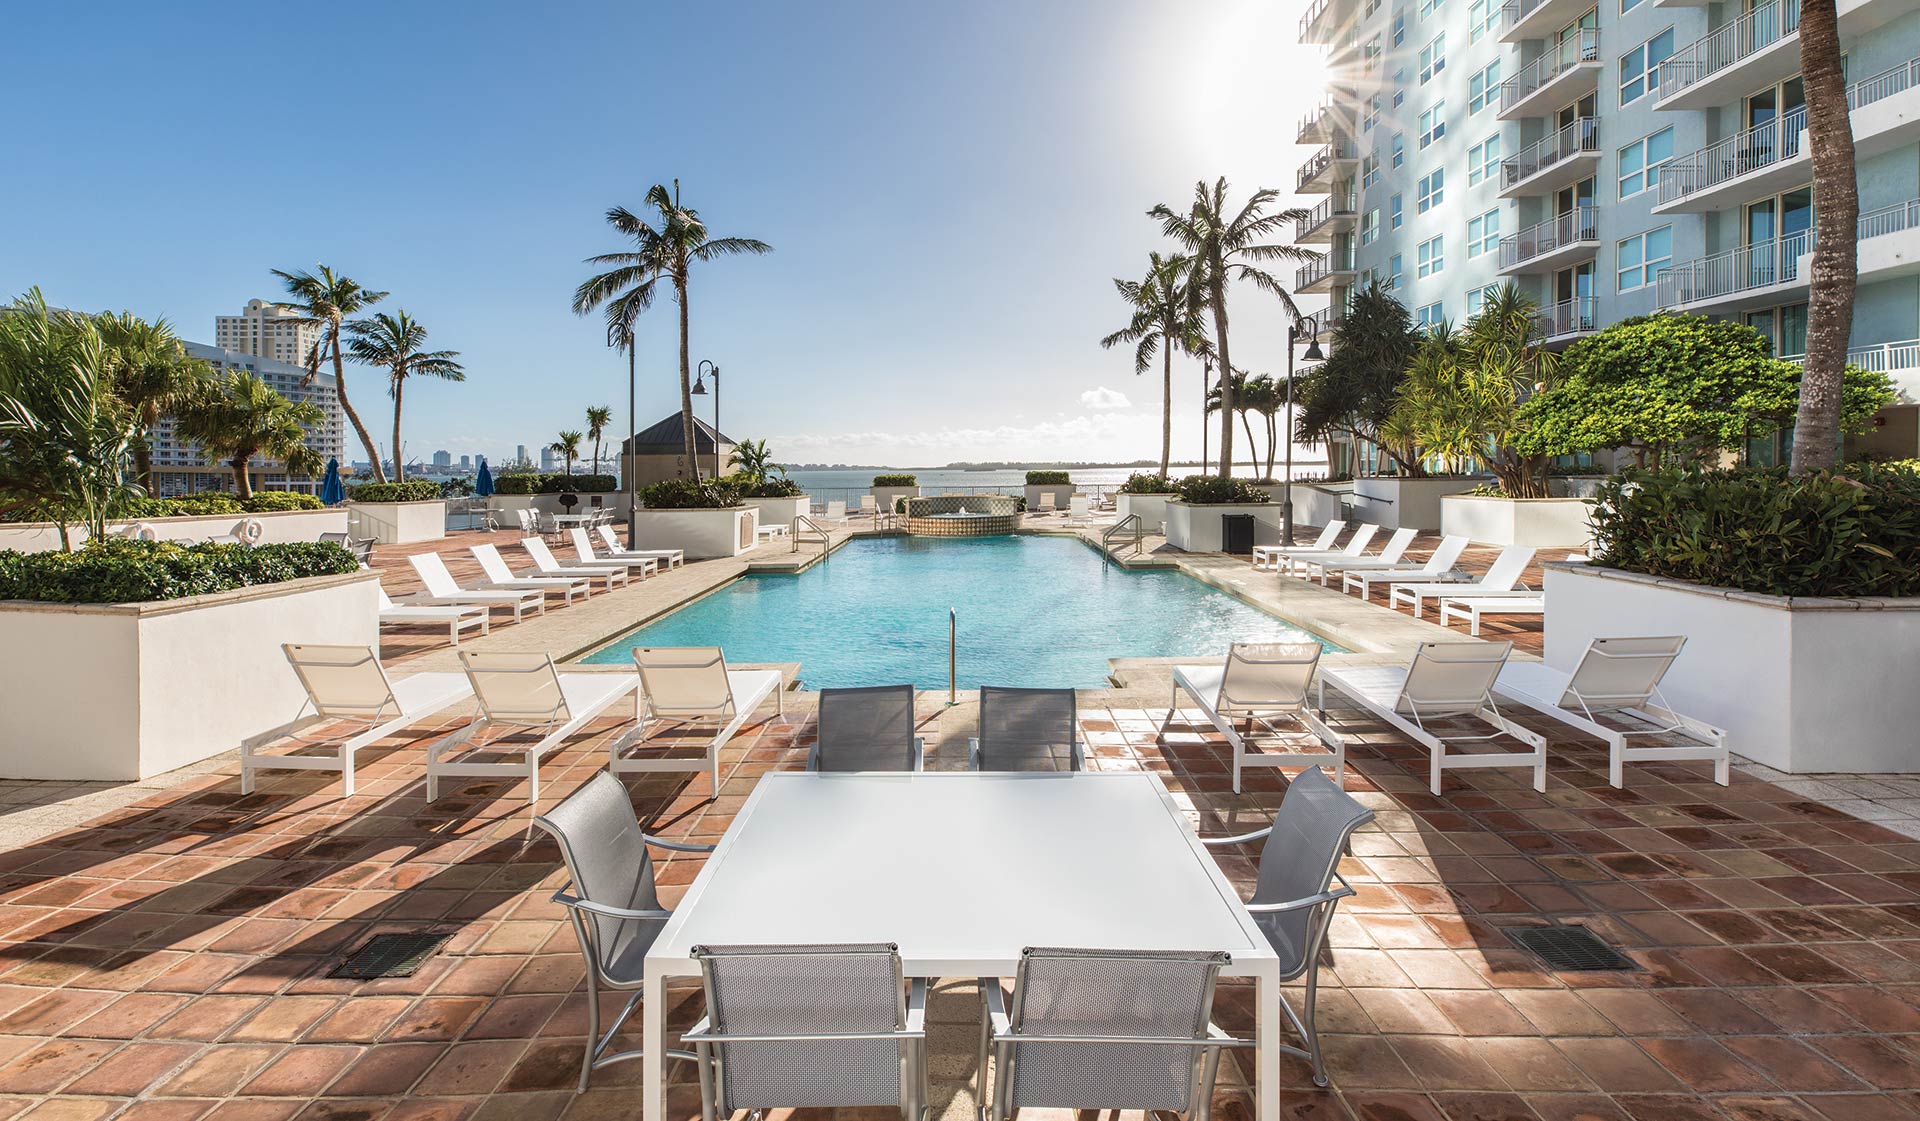 Yacht Club Apartments - Miami, FL - Pool View